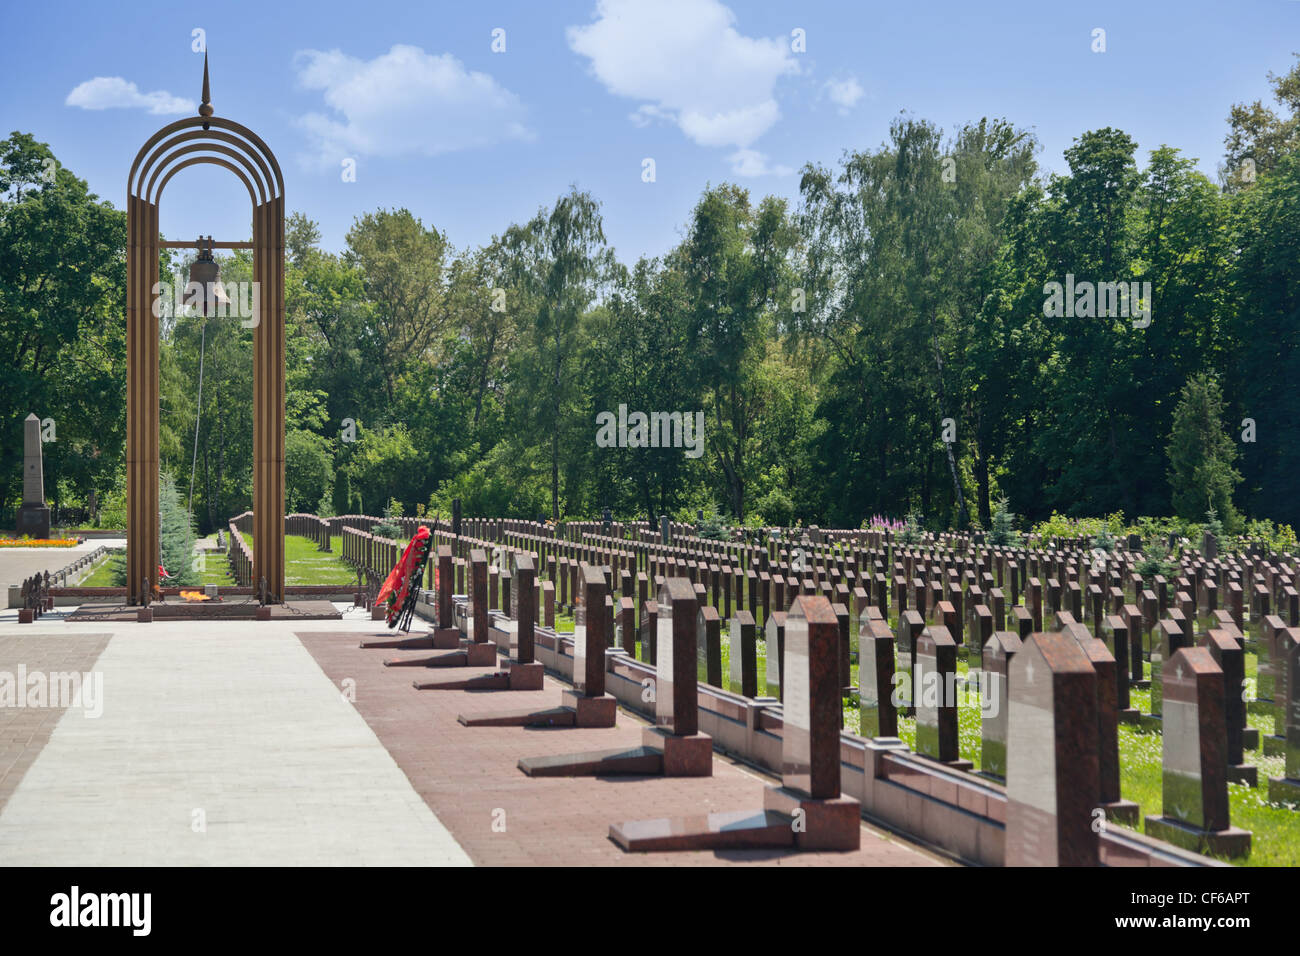 La fiamma eterna, campanile e obelischi presso il Sacrario militare del cimitero di Preobrazhenskoye. Foto Stock